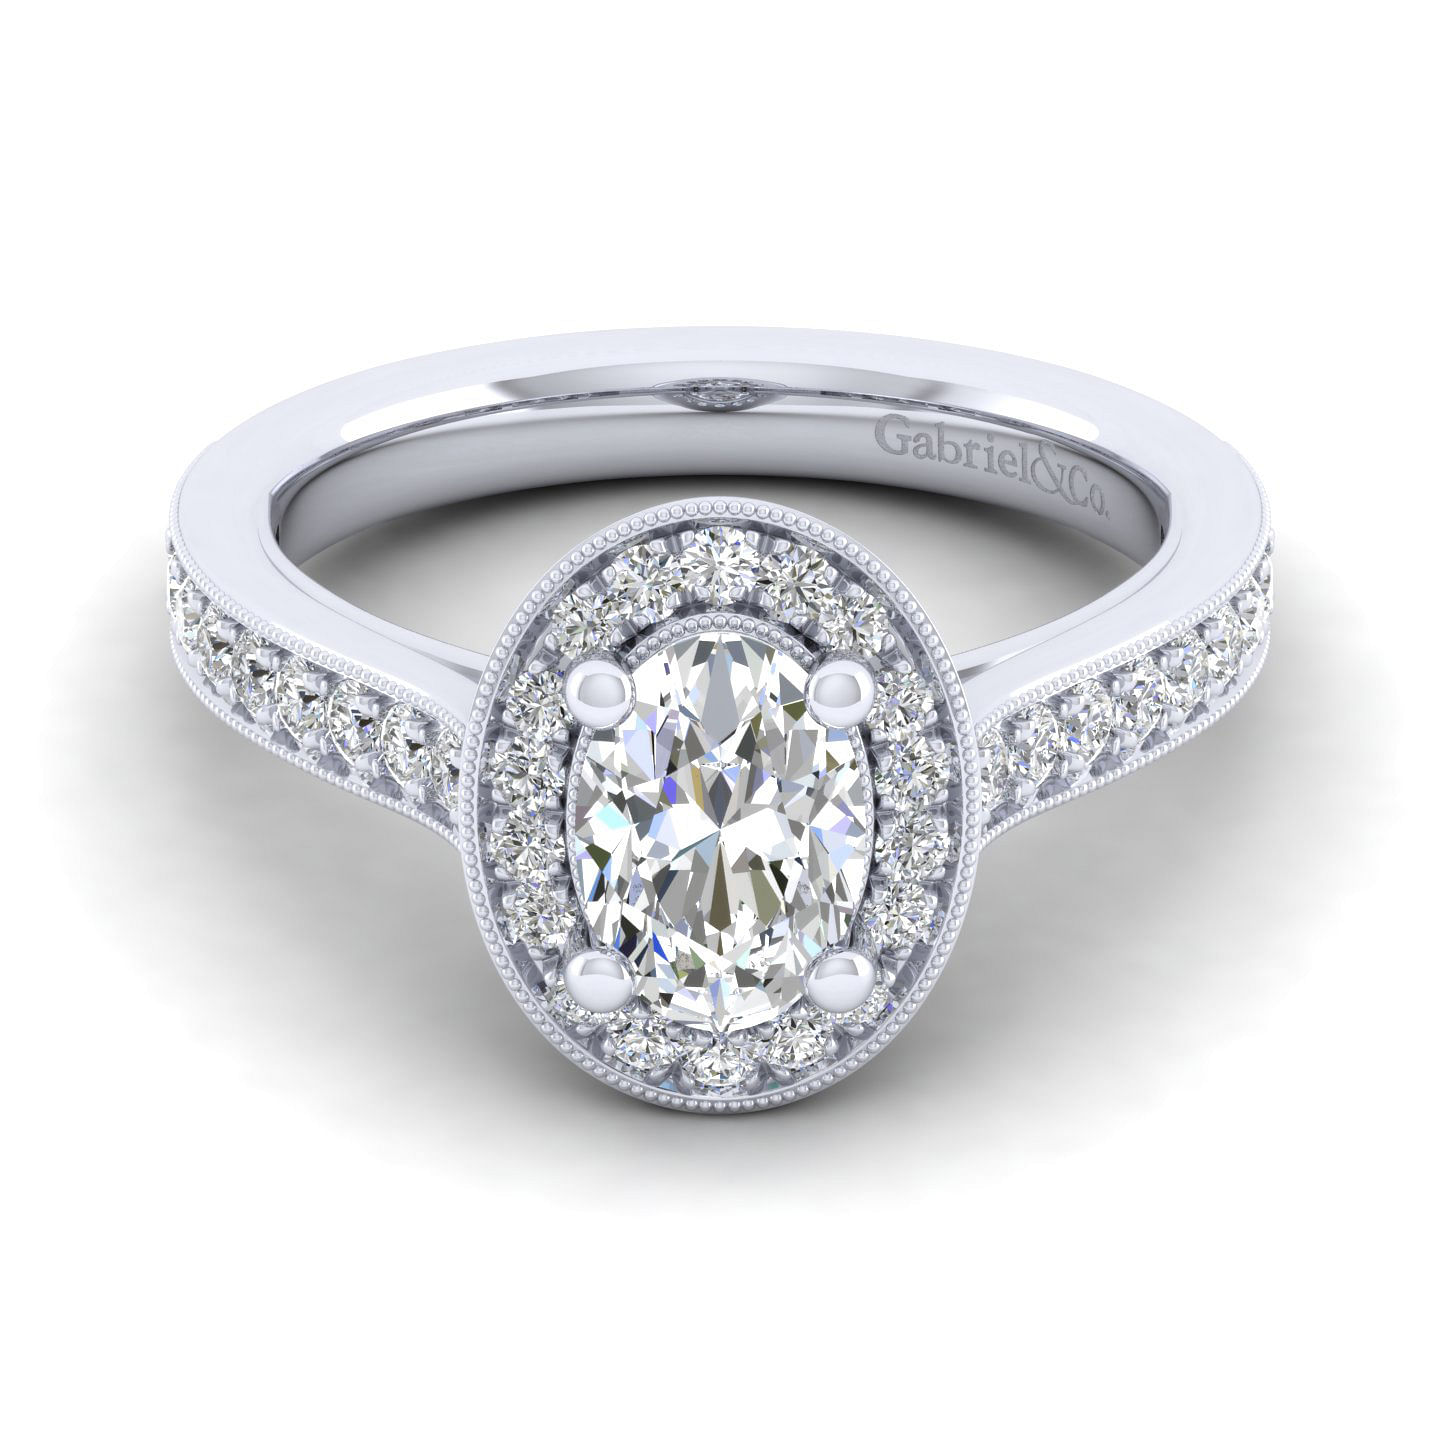 Harper - Vintage Inspired 14K White Gold Oval Halo Diamond Engagement Ring